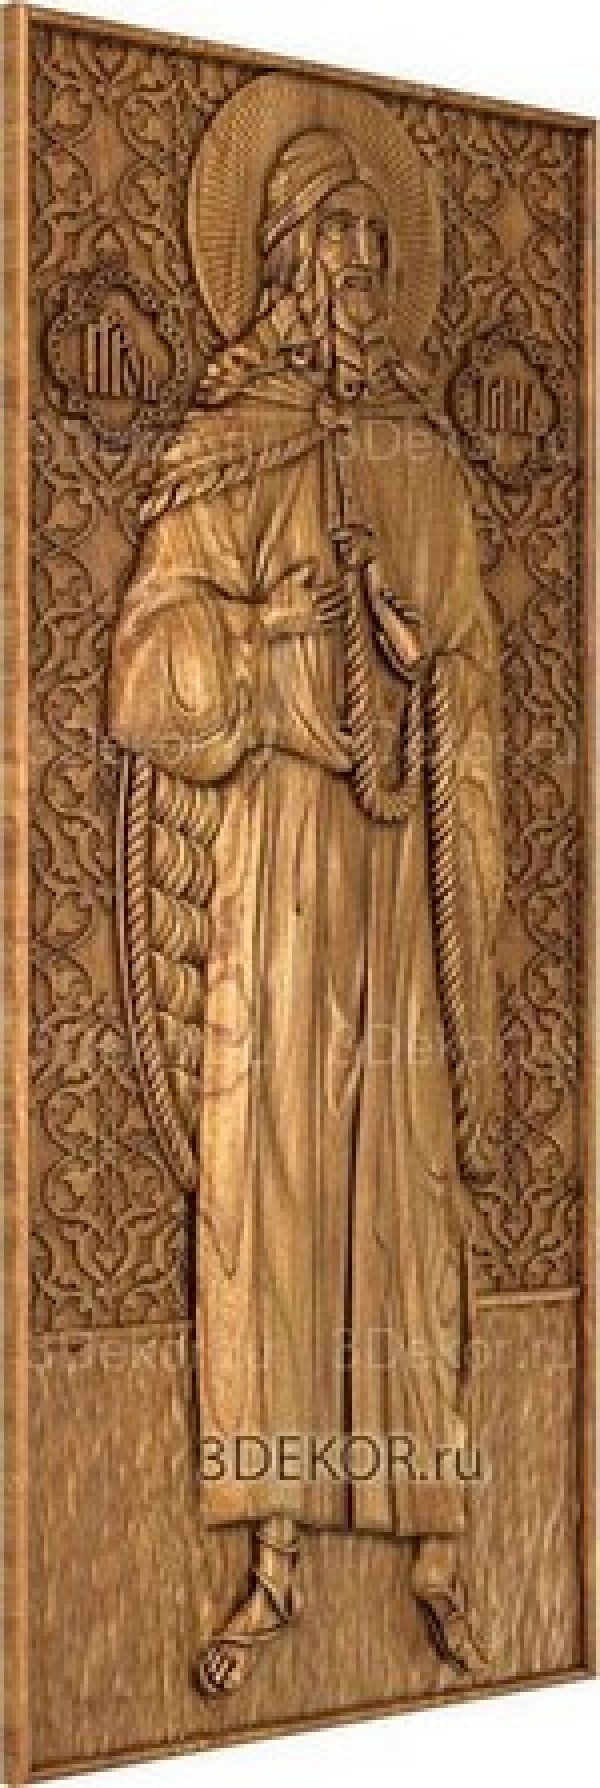 Икона Святой Пророк Илиа